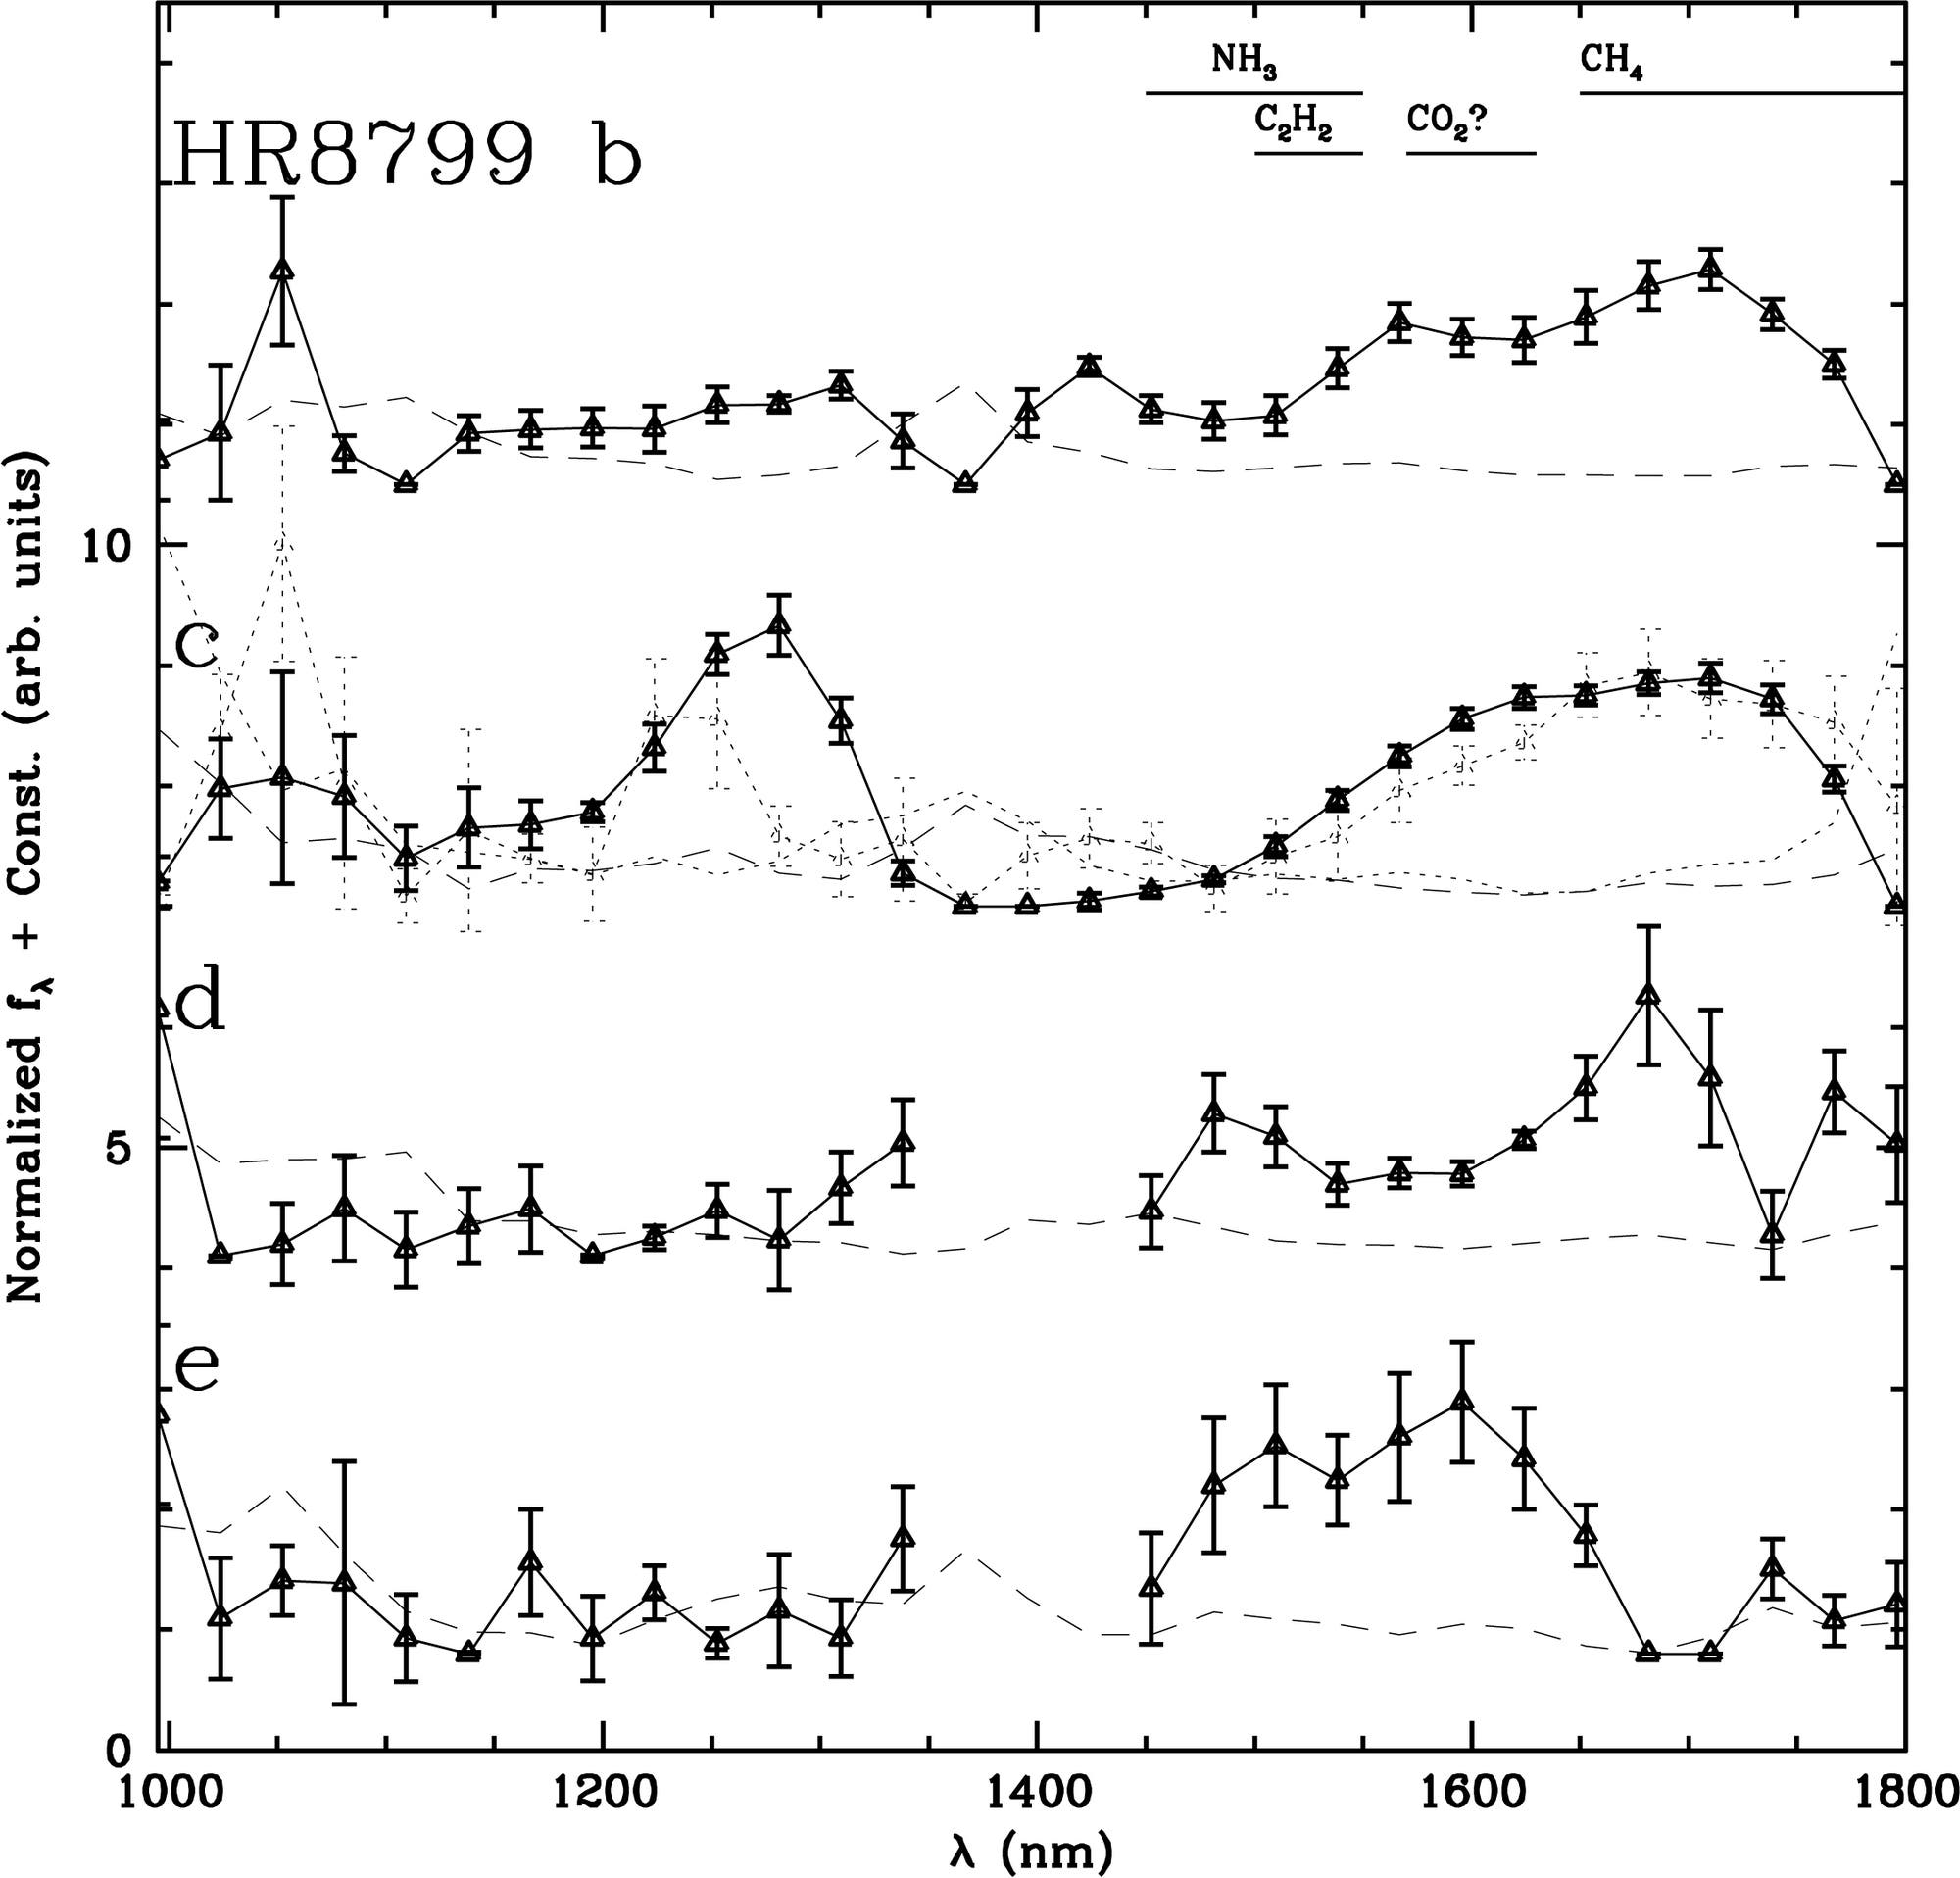 Infrarotspektren der vier Planeten um HR 8799